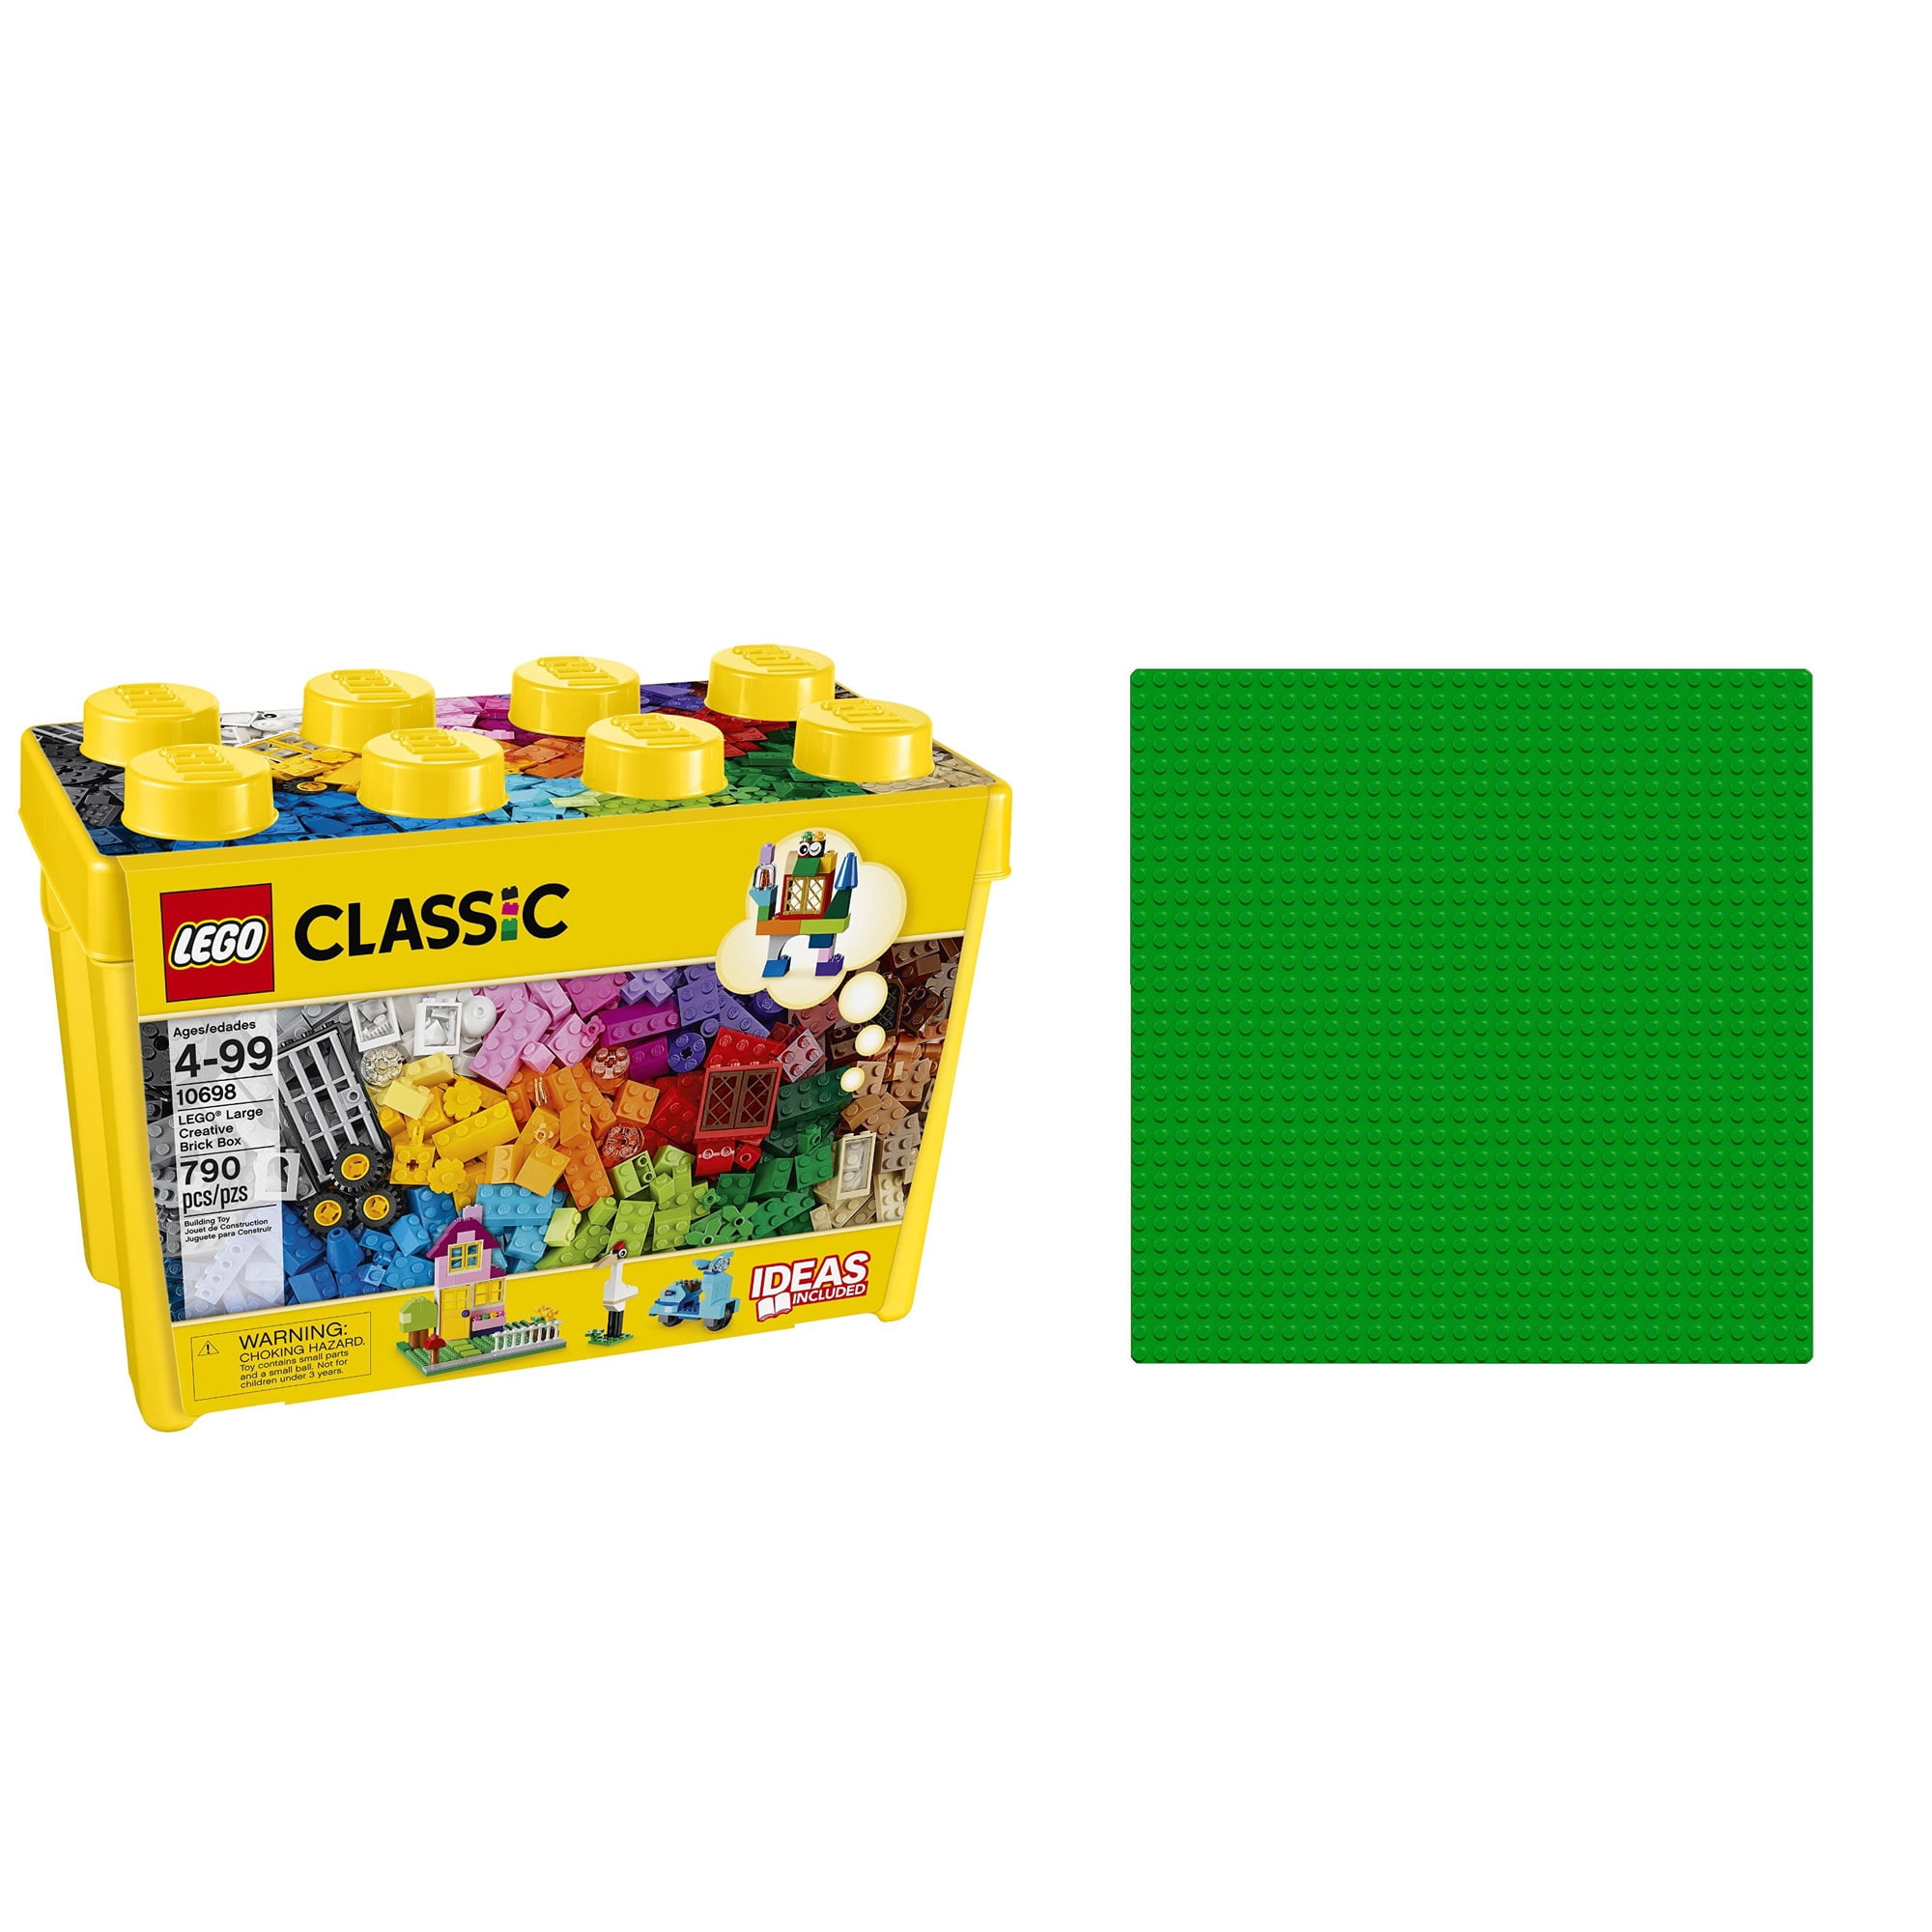 790 lego classic